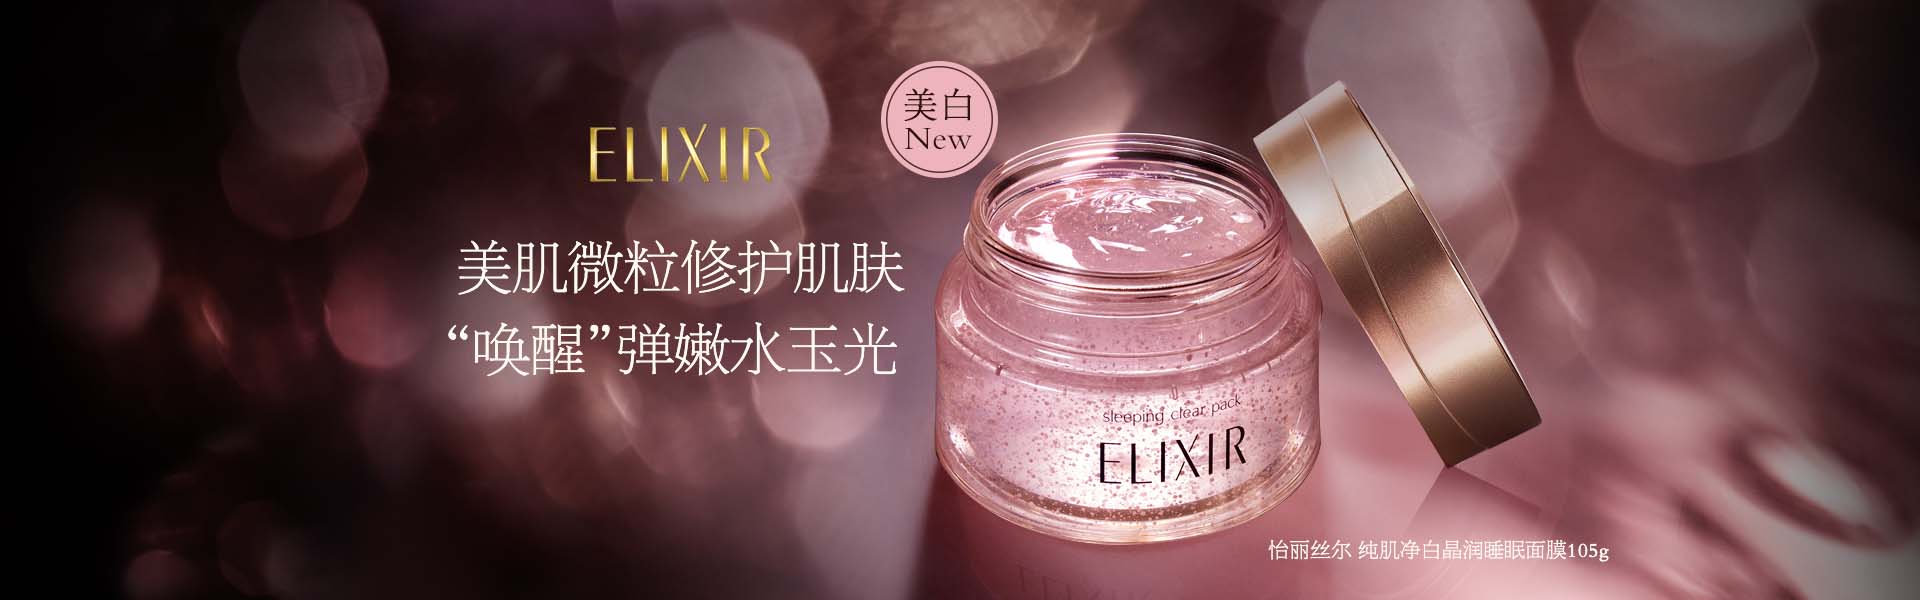 怡丽丝尔_化妆护肤品成分介绍_Elixir是哪个国家的品牌_是什么牌子